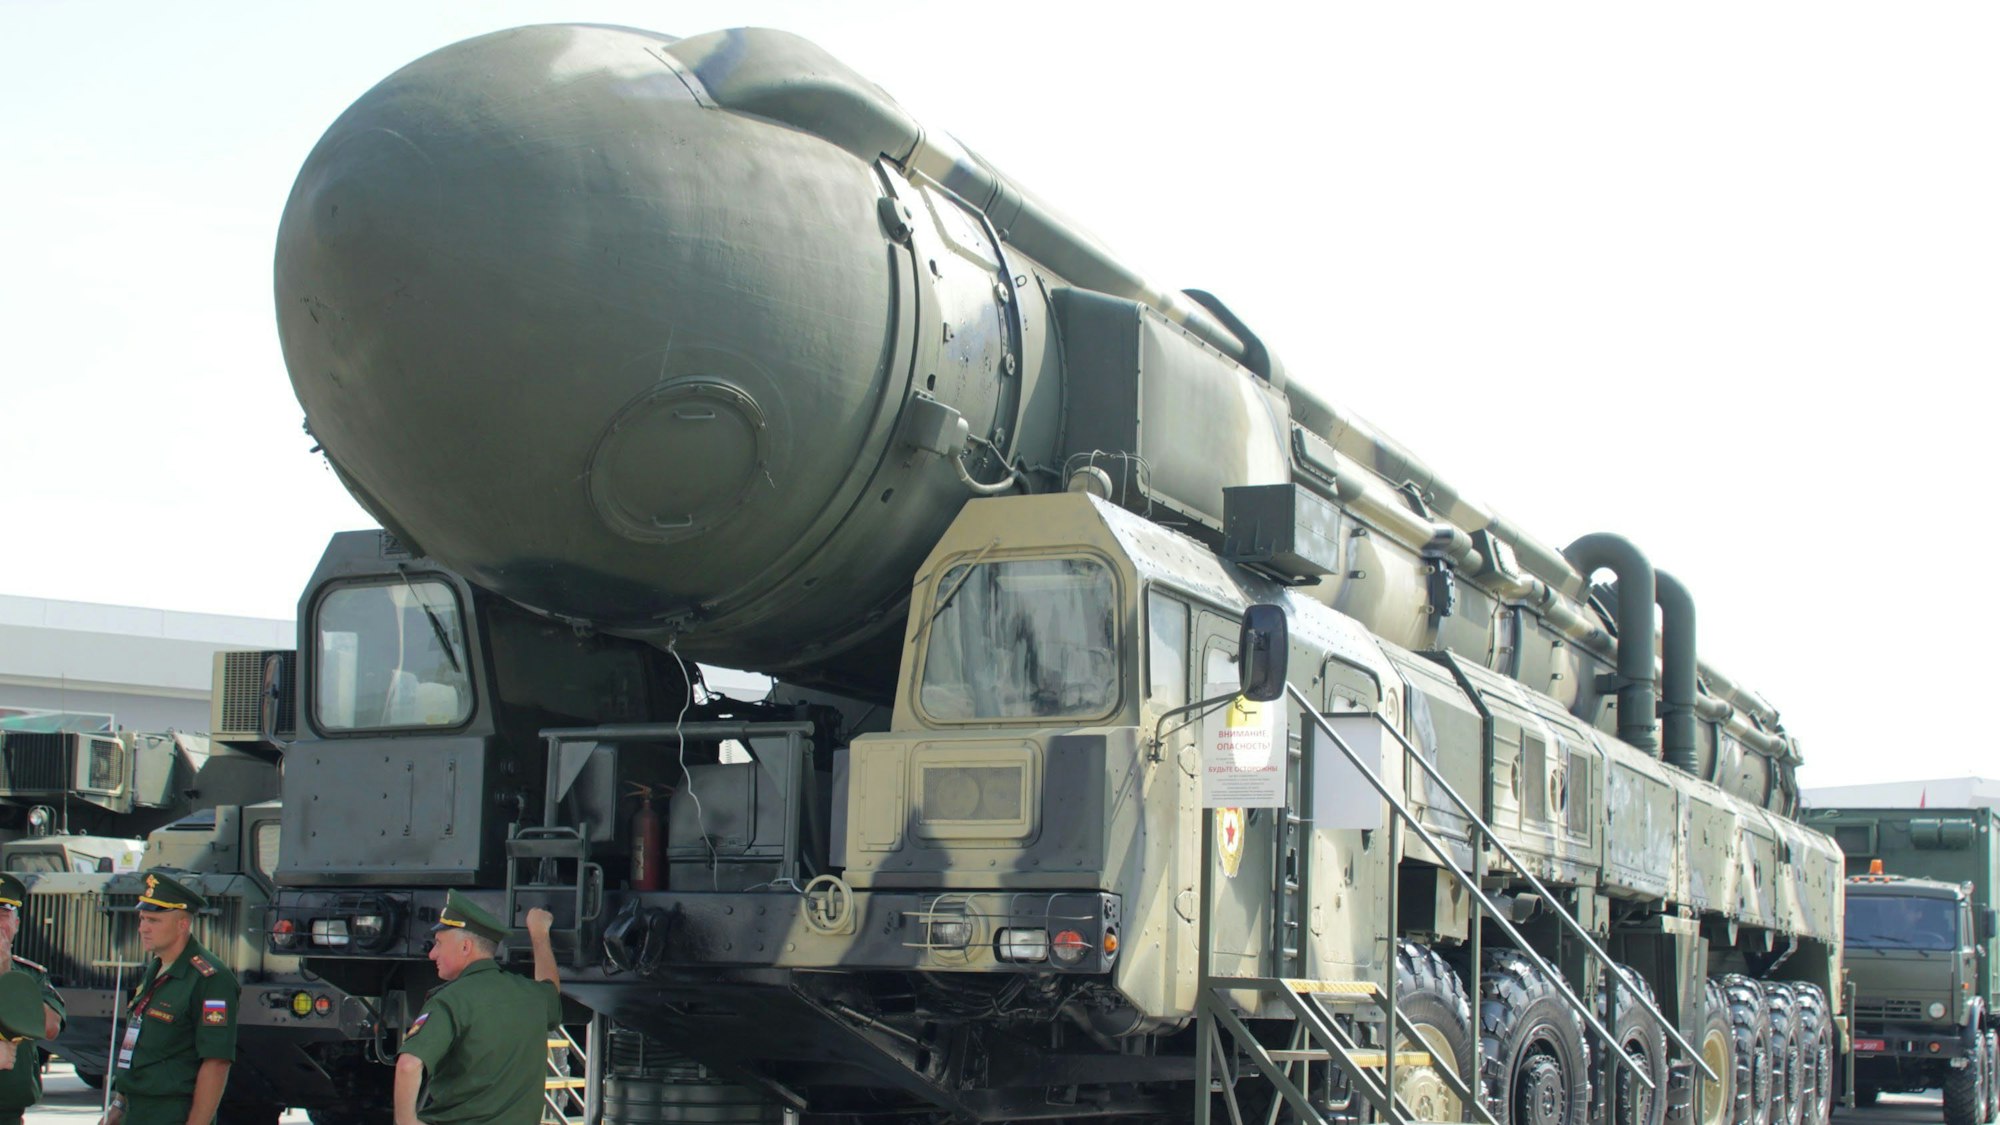 Eine mit Nuklearsprengköpfen bestückbare Interkontinentalrakete vom Typ Topol des russischen Militärs wird auf einen Militärtransporter geladen. (Symbolbild)